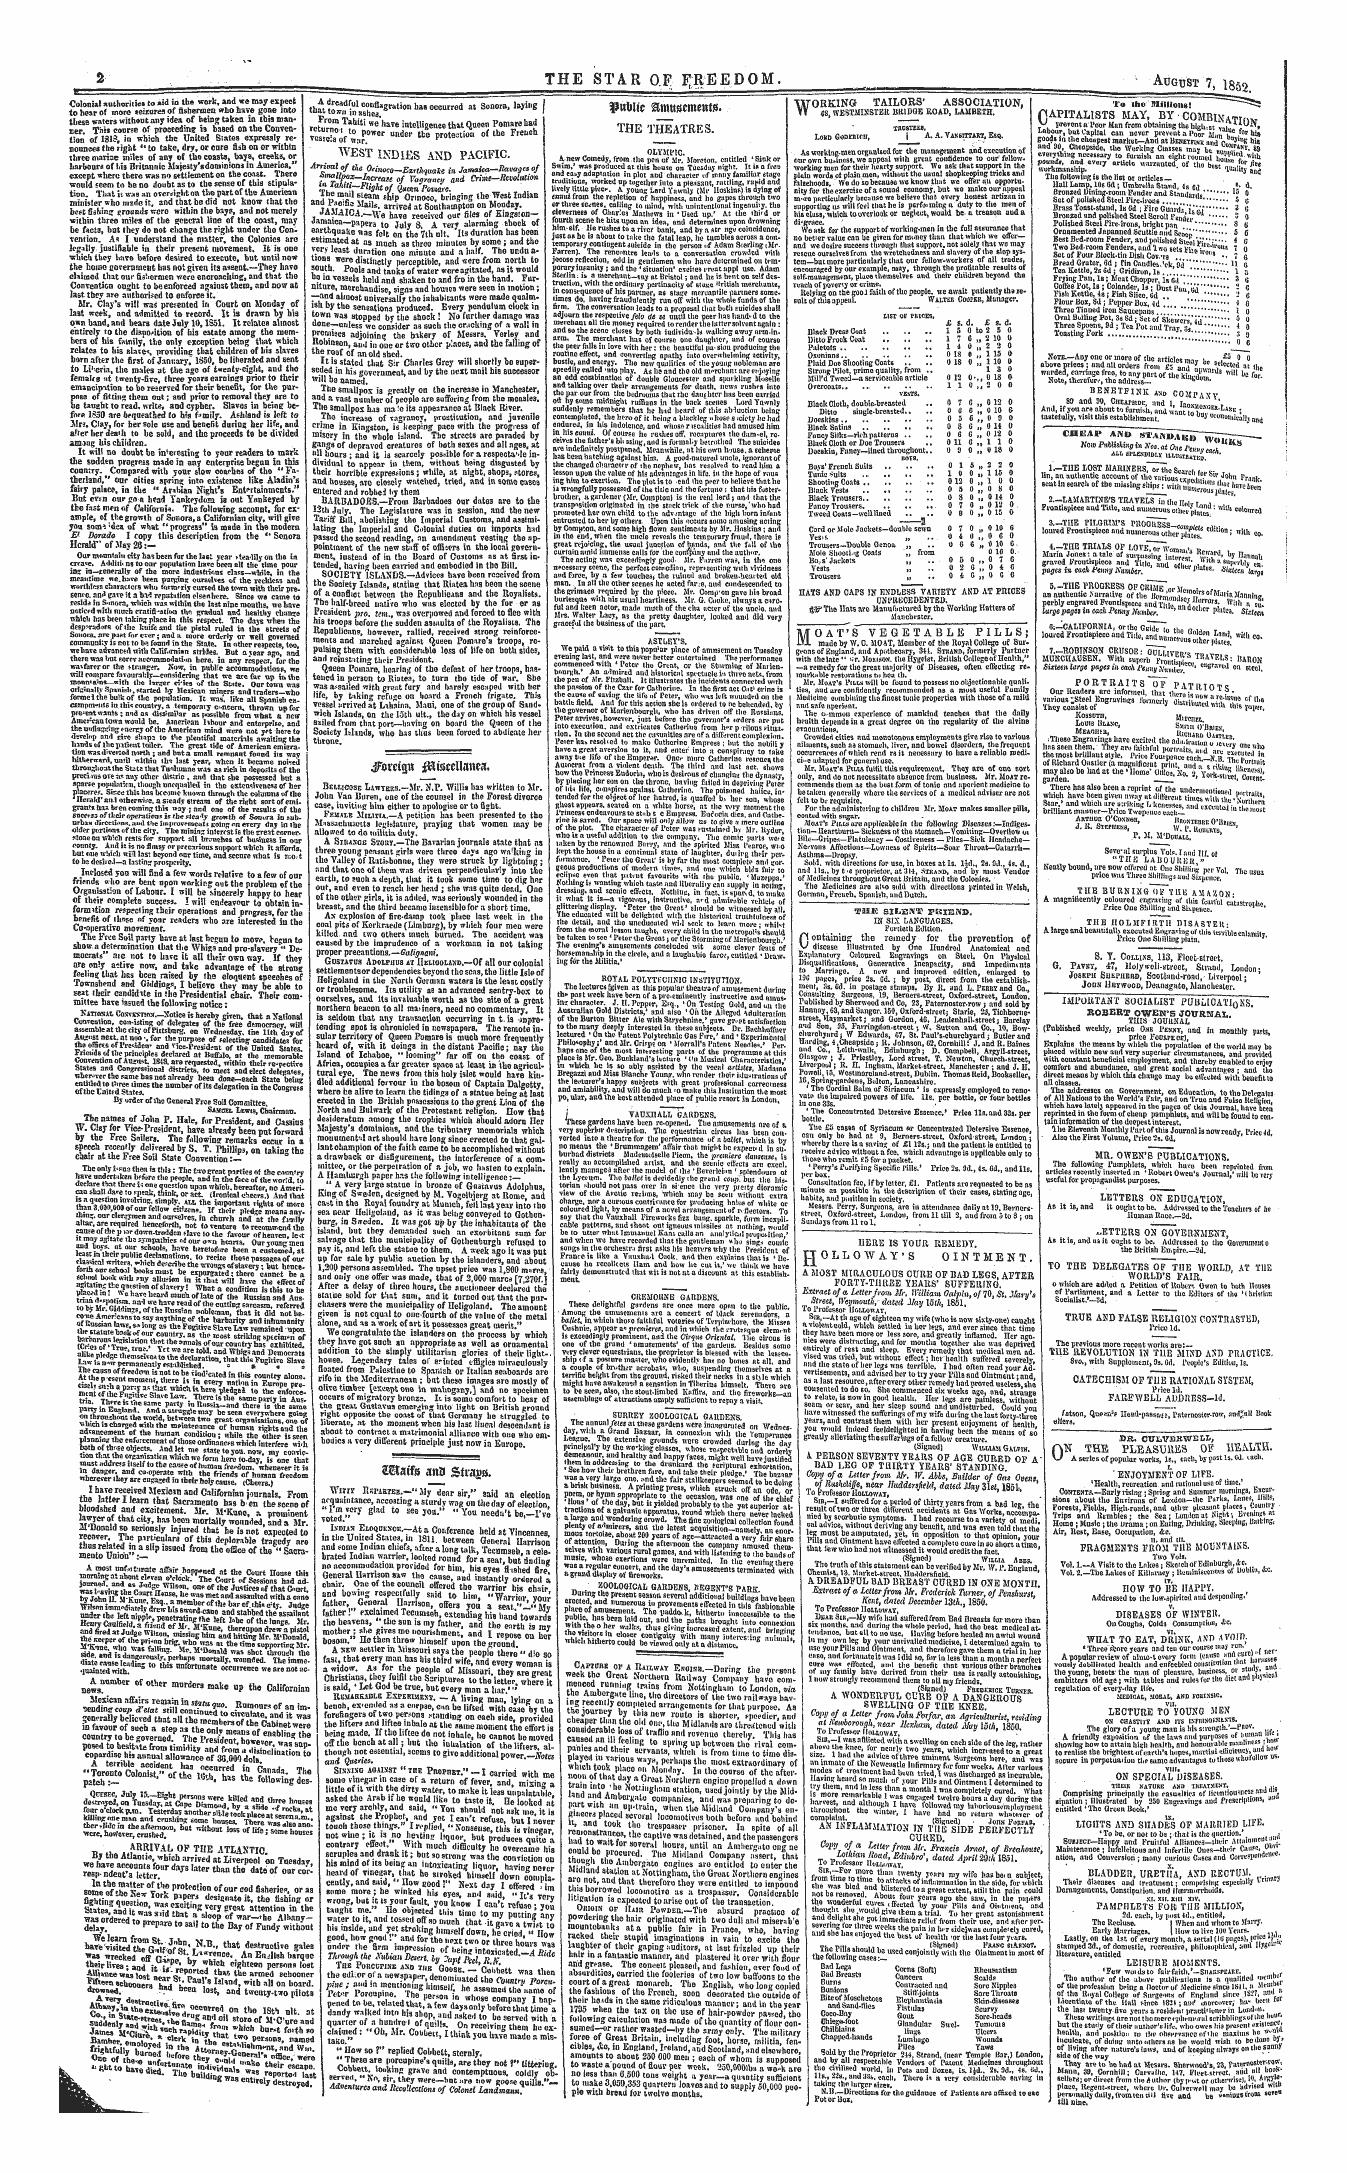 Northern Star (1837-1852): jS F Y, 1st edition - " ' """' '" ——- Prtlic &Mtt*Ement0. — - -—I - " — ' '